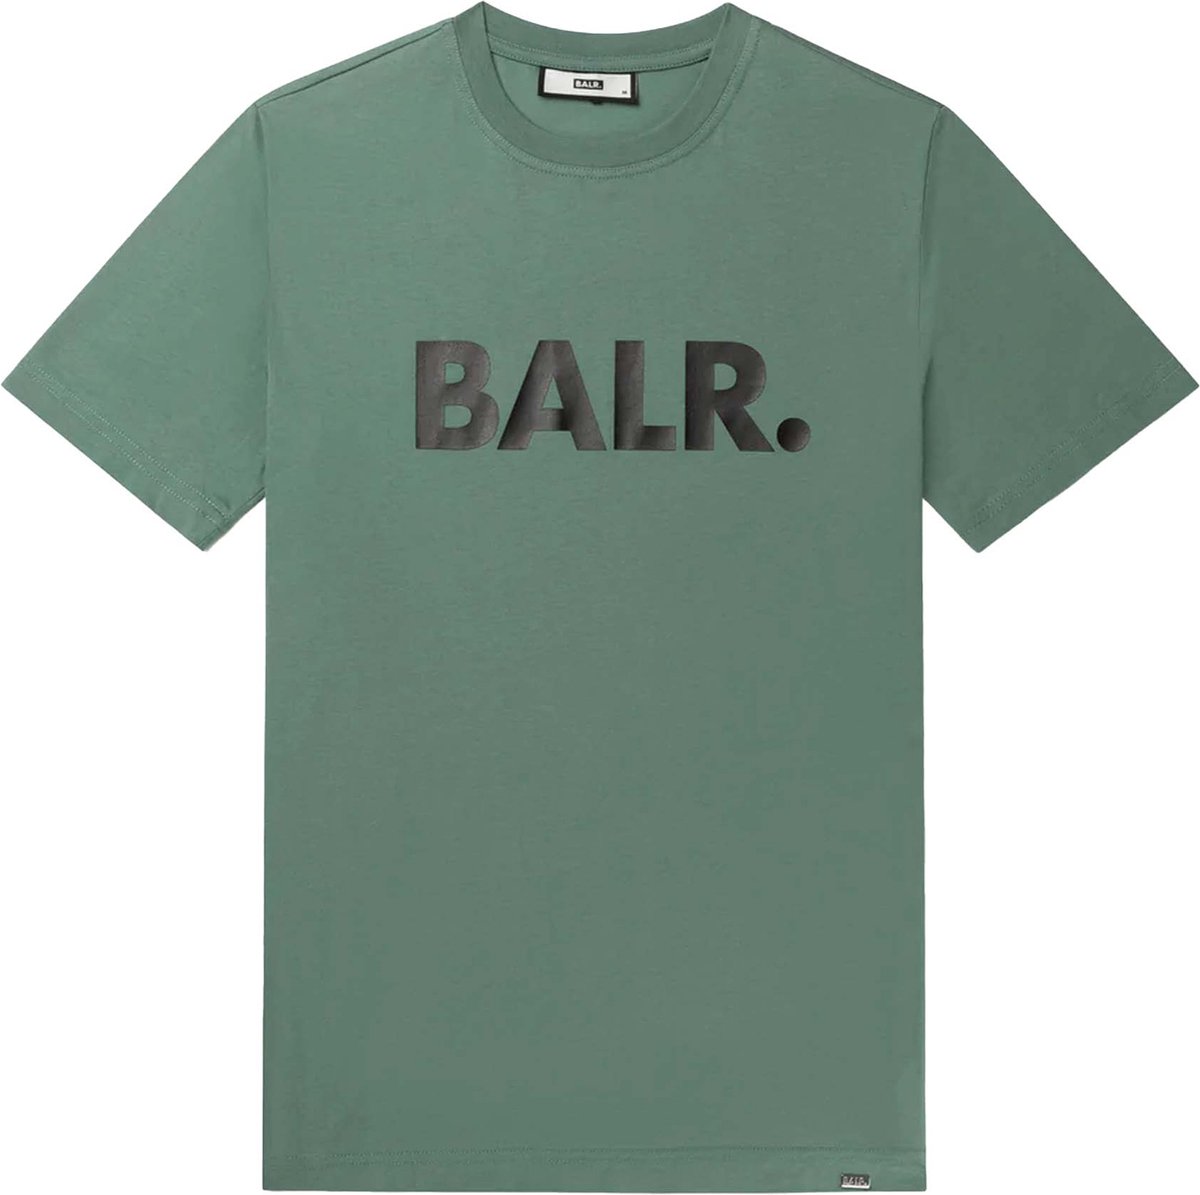 BALR. Shirt Groen Katoen maat M Brand straight t-shirts groen